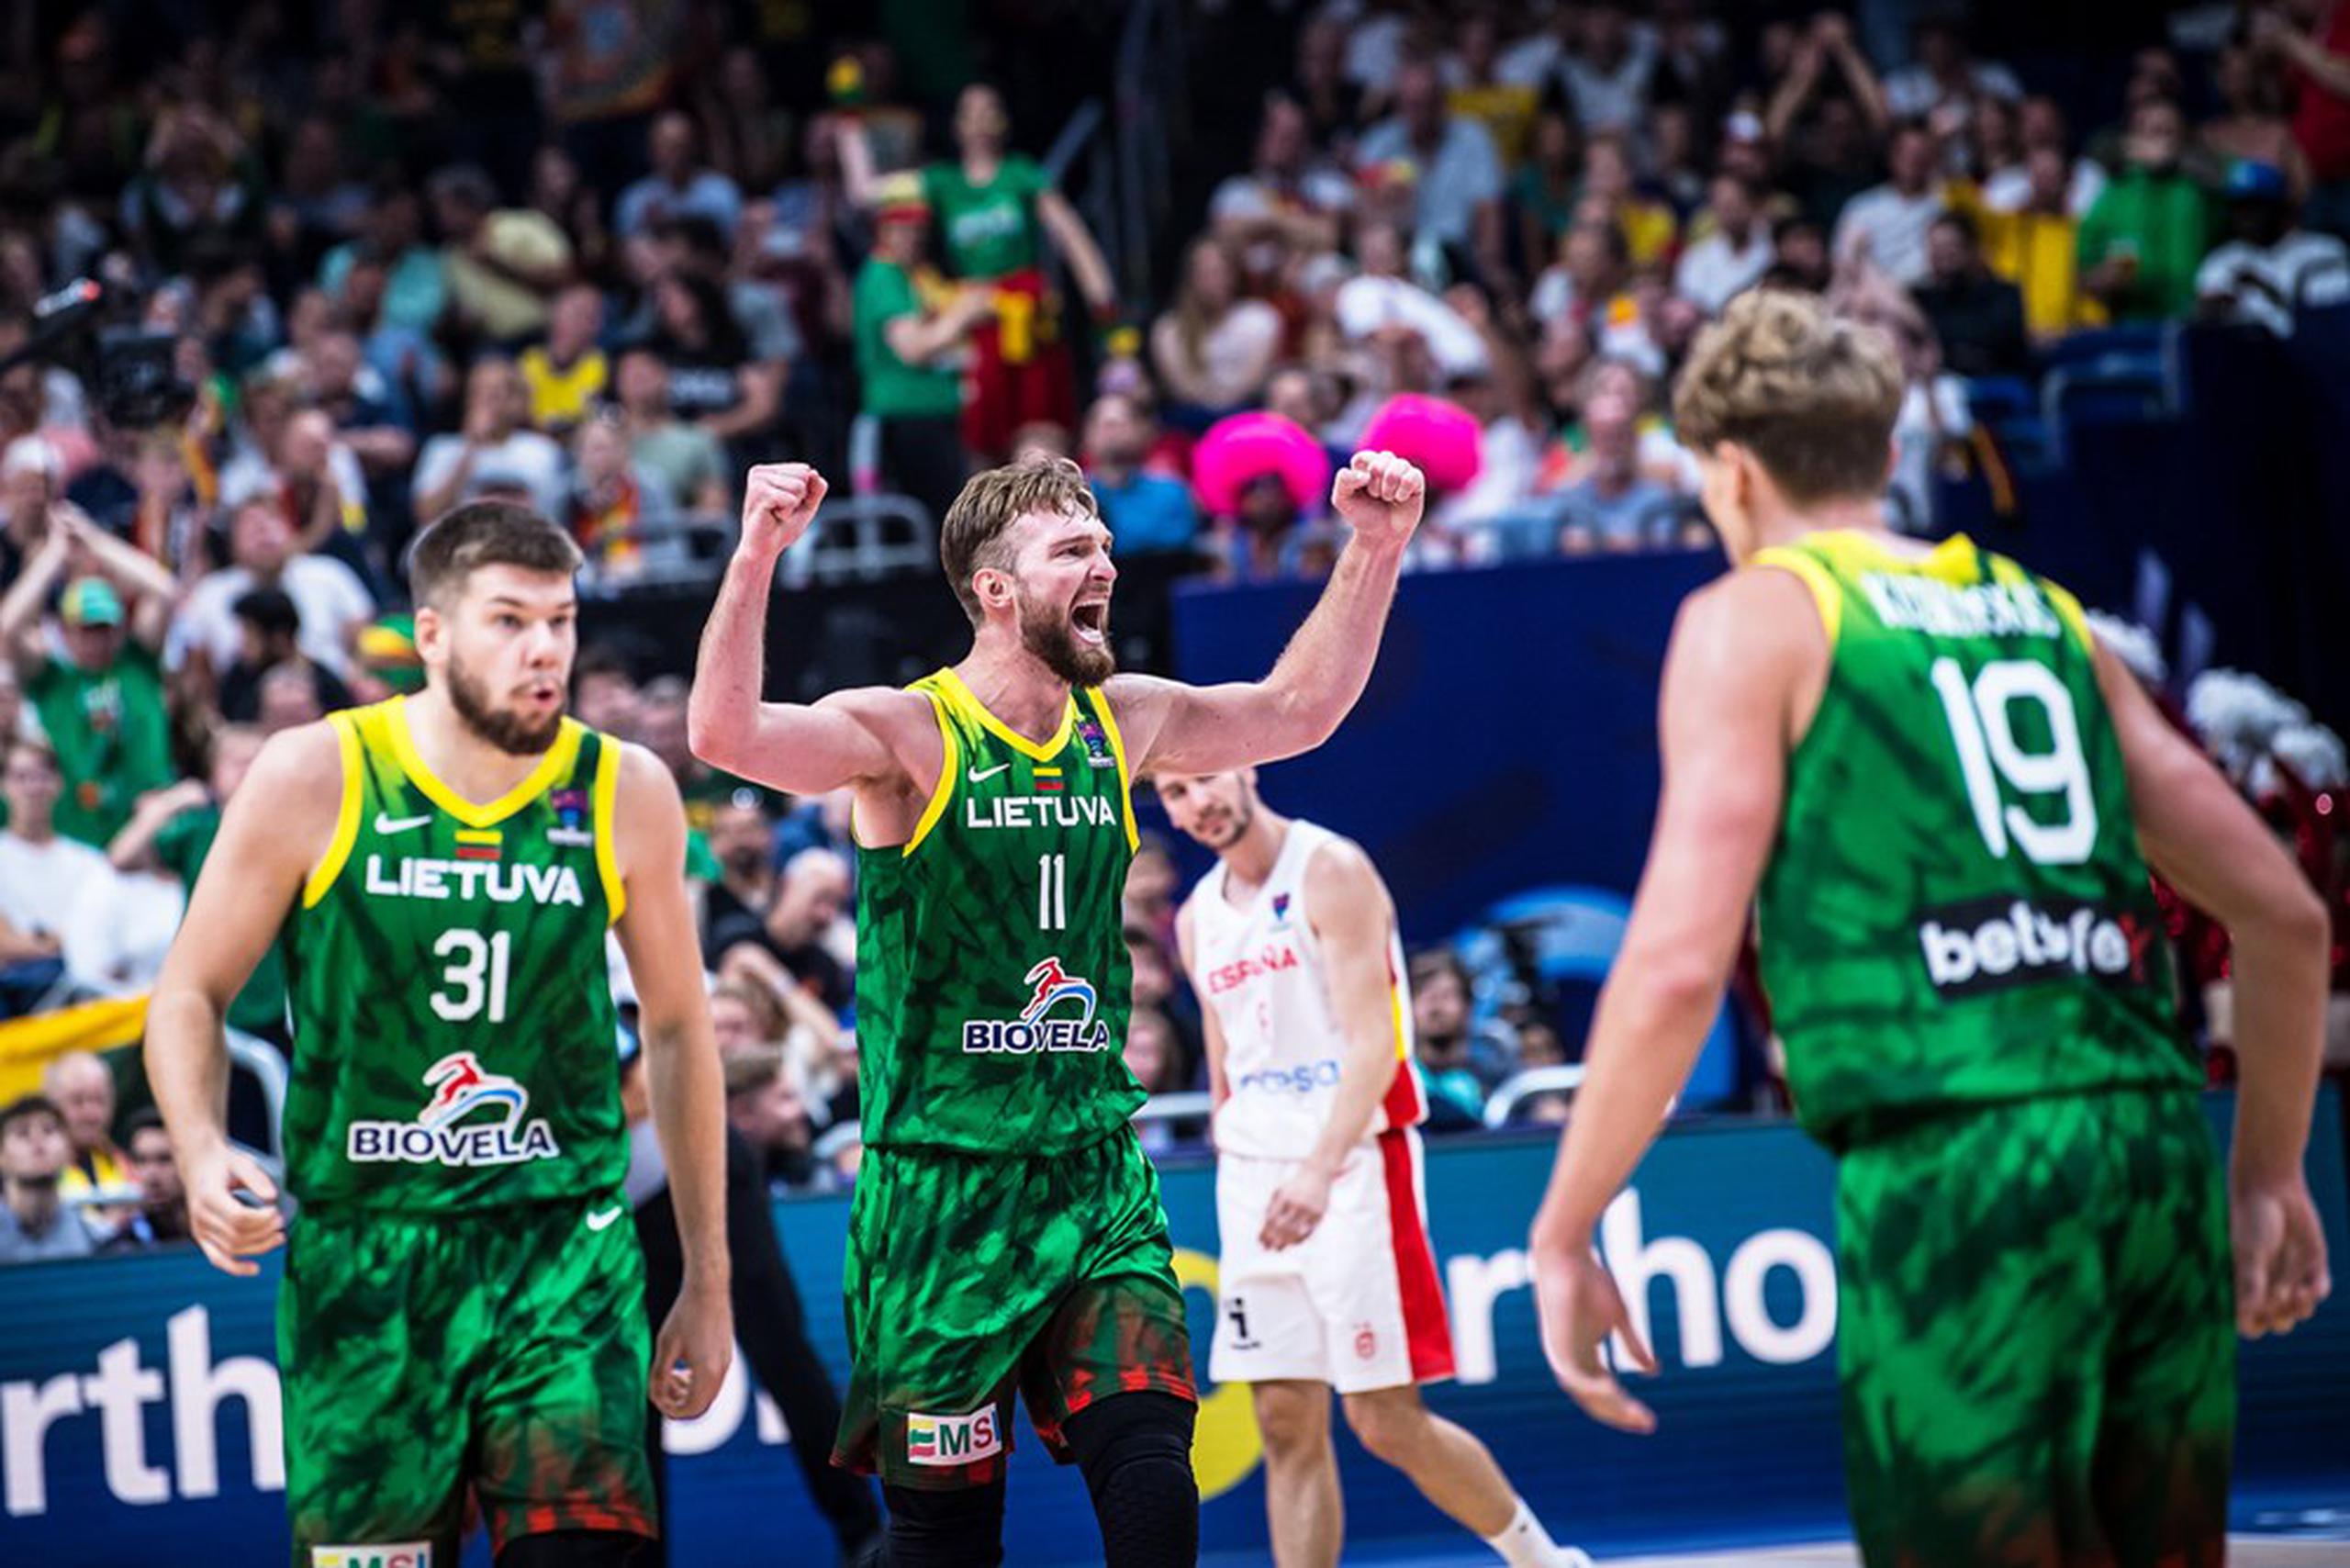 El lituano Domantas Sabonis, al centro, es un jugador que registra promedios en doble dígito en la NBA.